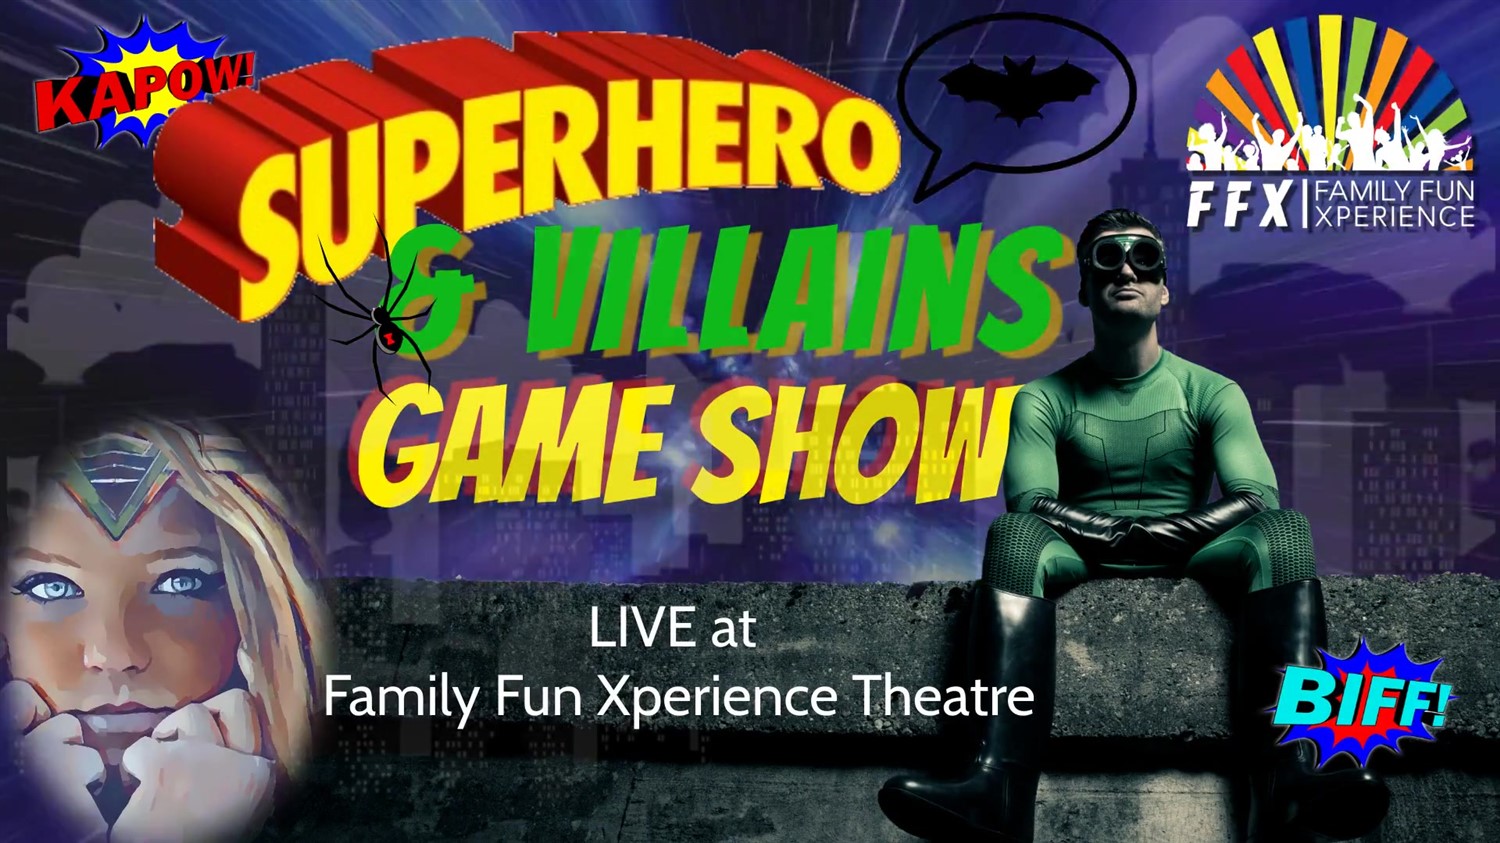 Superheroes & Villains: LIVE GAME SHOW  on ene. 27, 19:00@FFX Theatre - Elegir asientoCompra entradas y obtén información enFamily Fun Xperience tickets.ffxshow.org